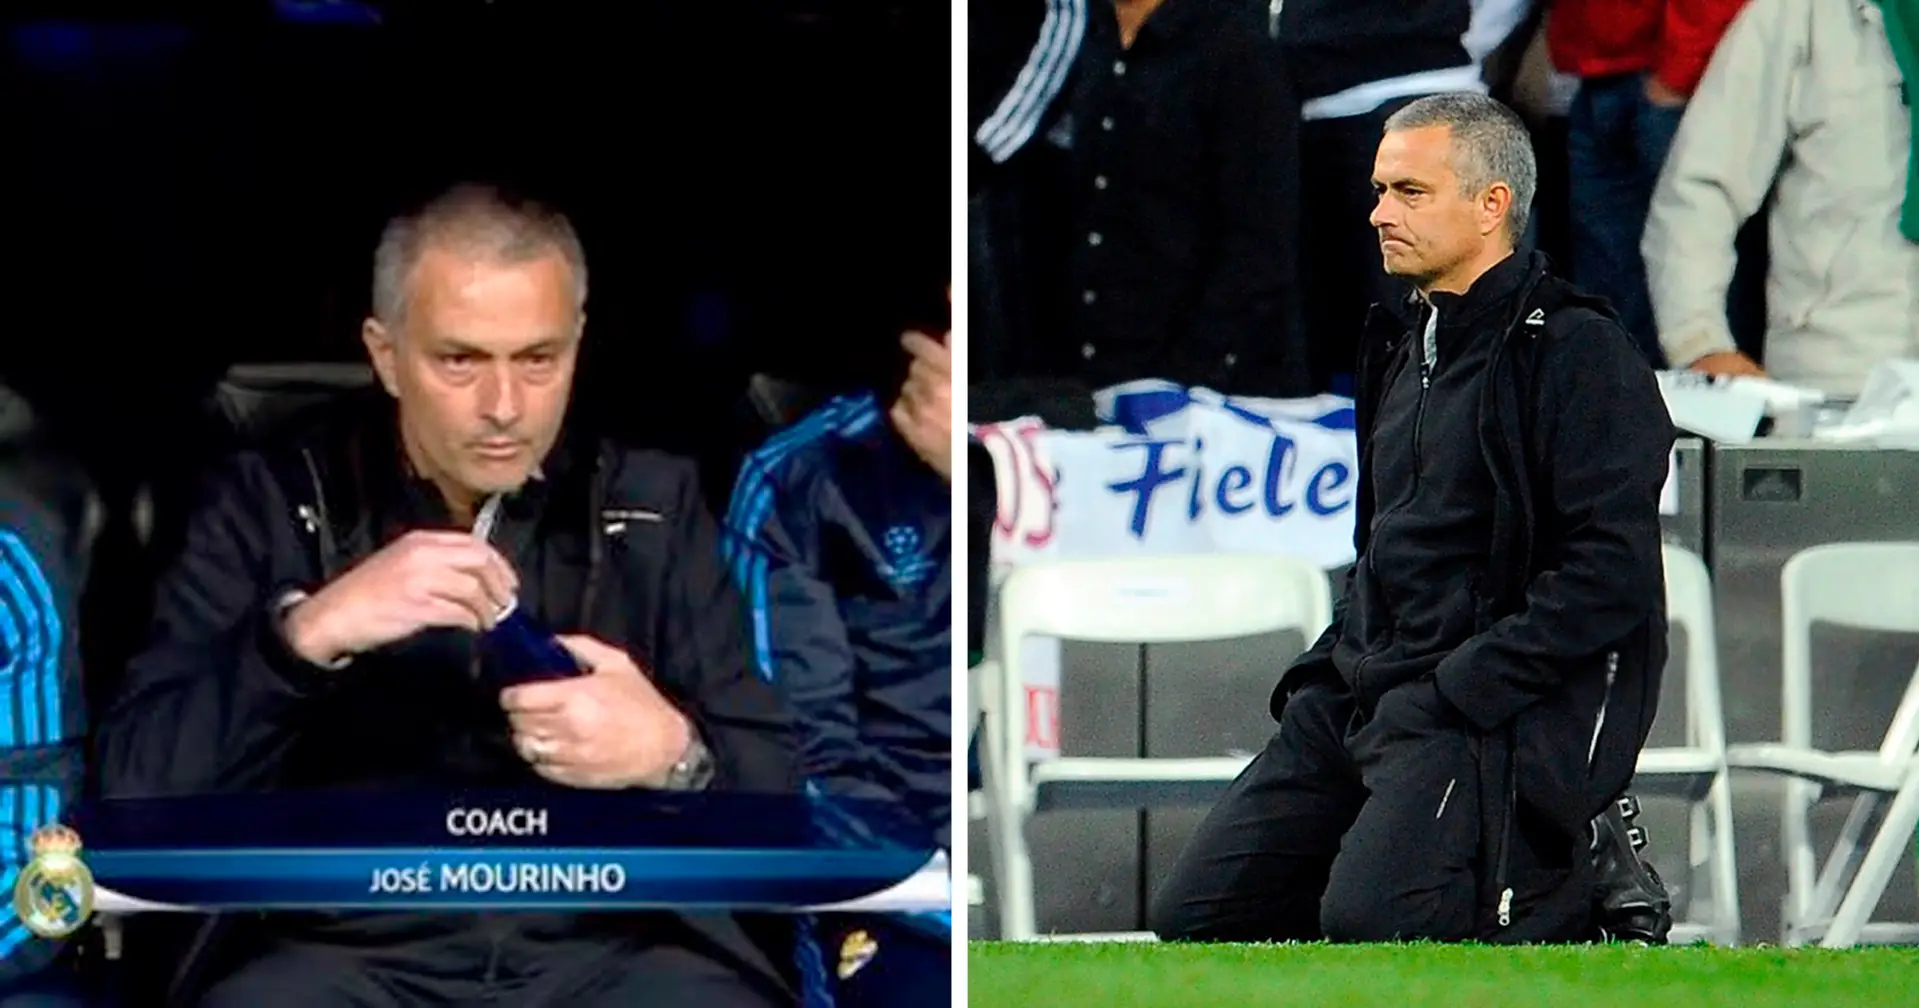 "La plus douloureux de ma carrière" :  Mourinho révèle la seule défaite en tant qu'entraîneur qui l'ait fait pleurer